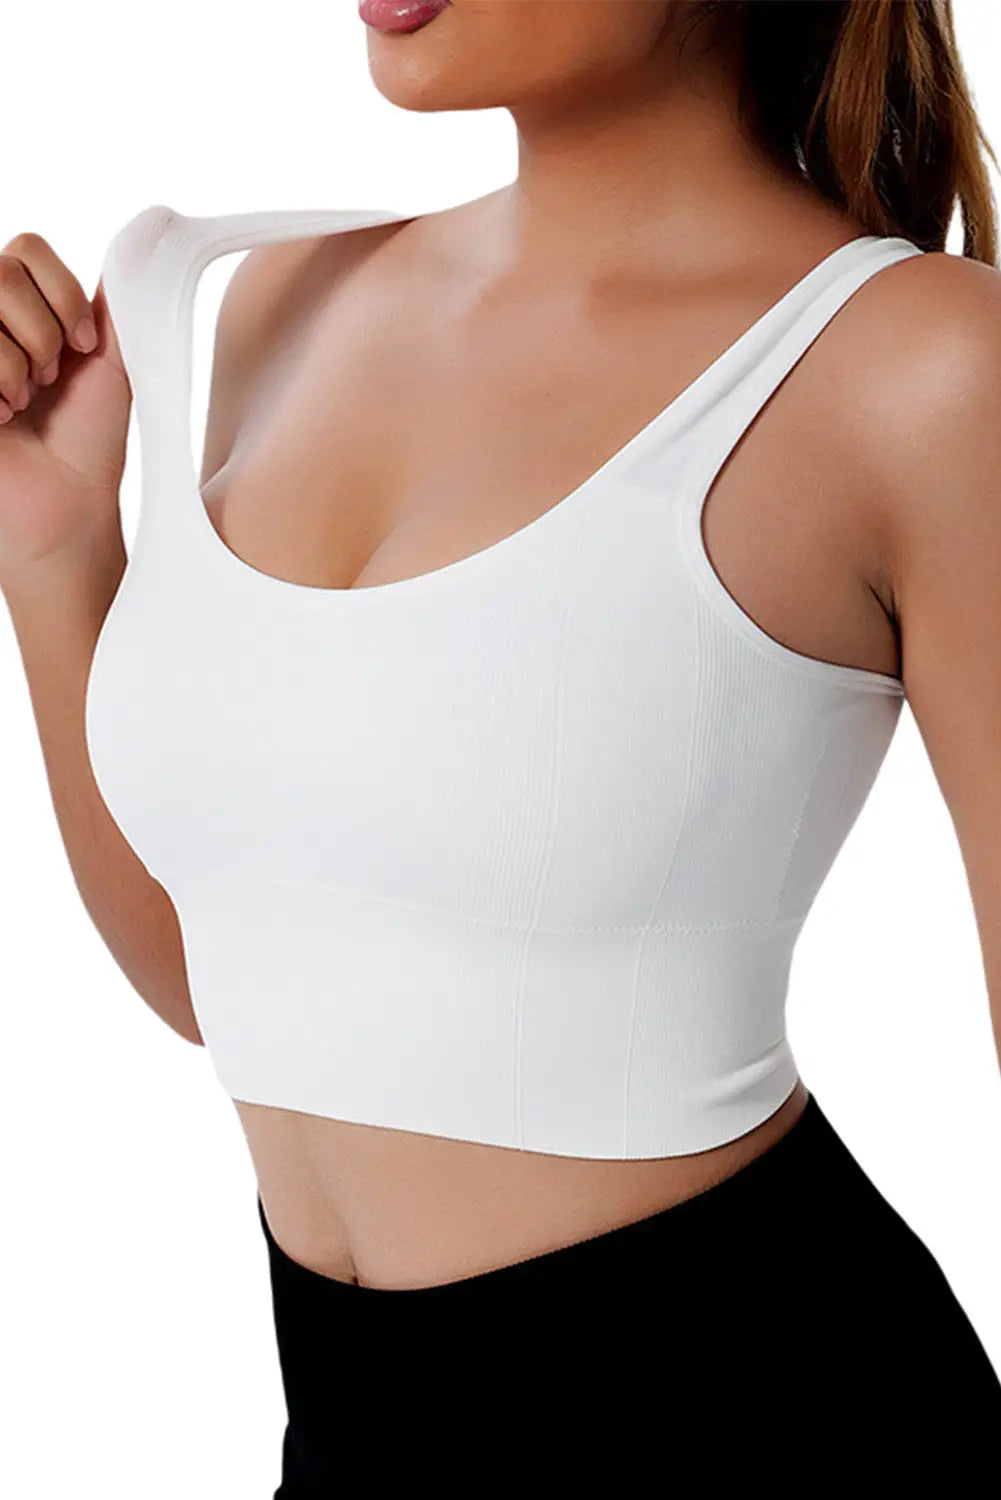 White seamless u neck sleeveless cropped yoga top - sports cami